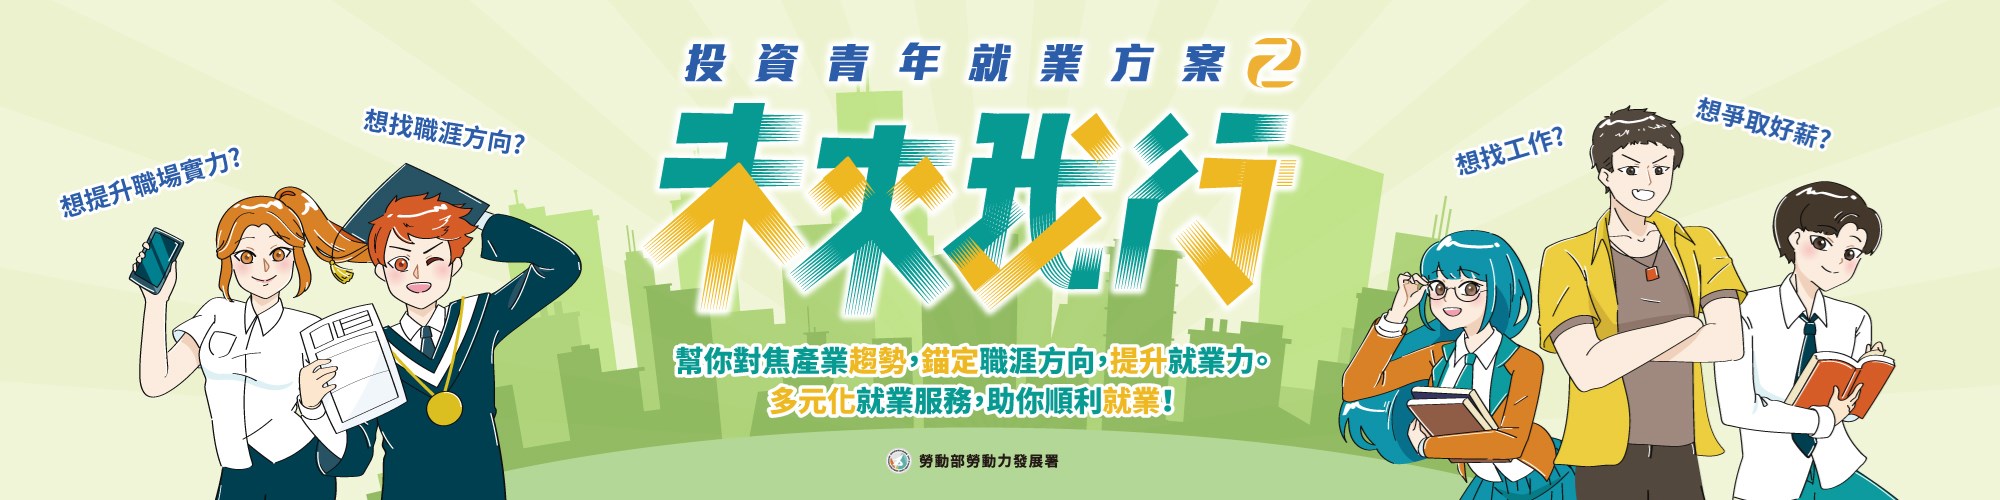 勞動部官網banner 投資青年就業方案第二期2000x500